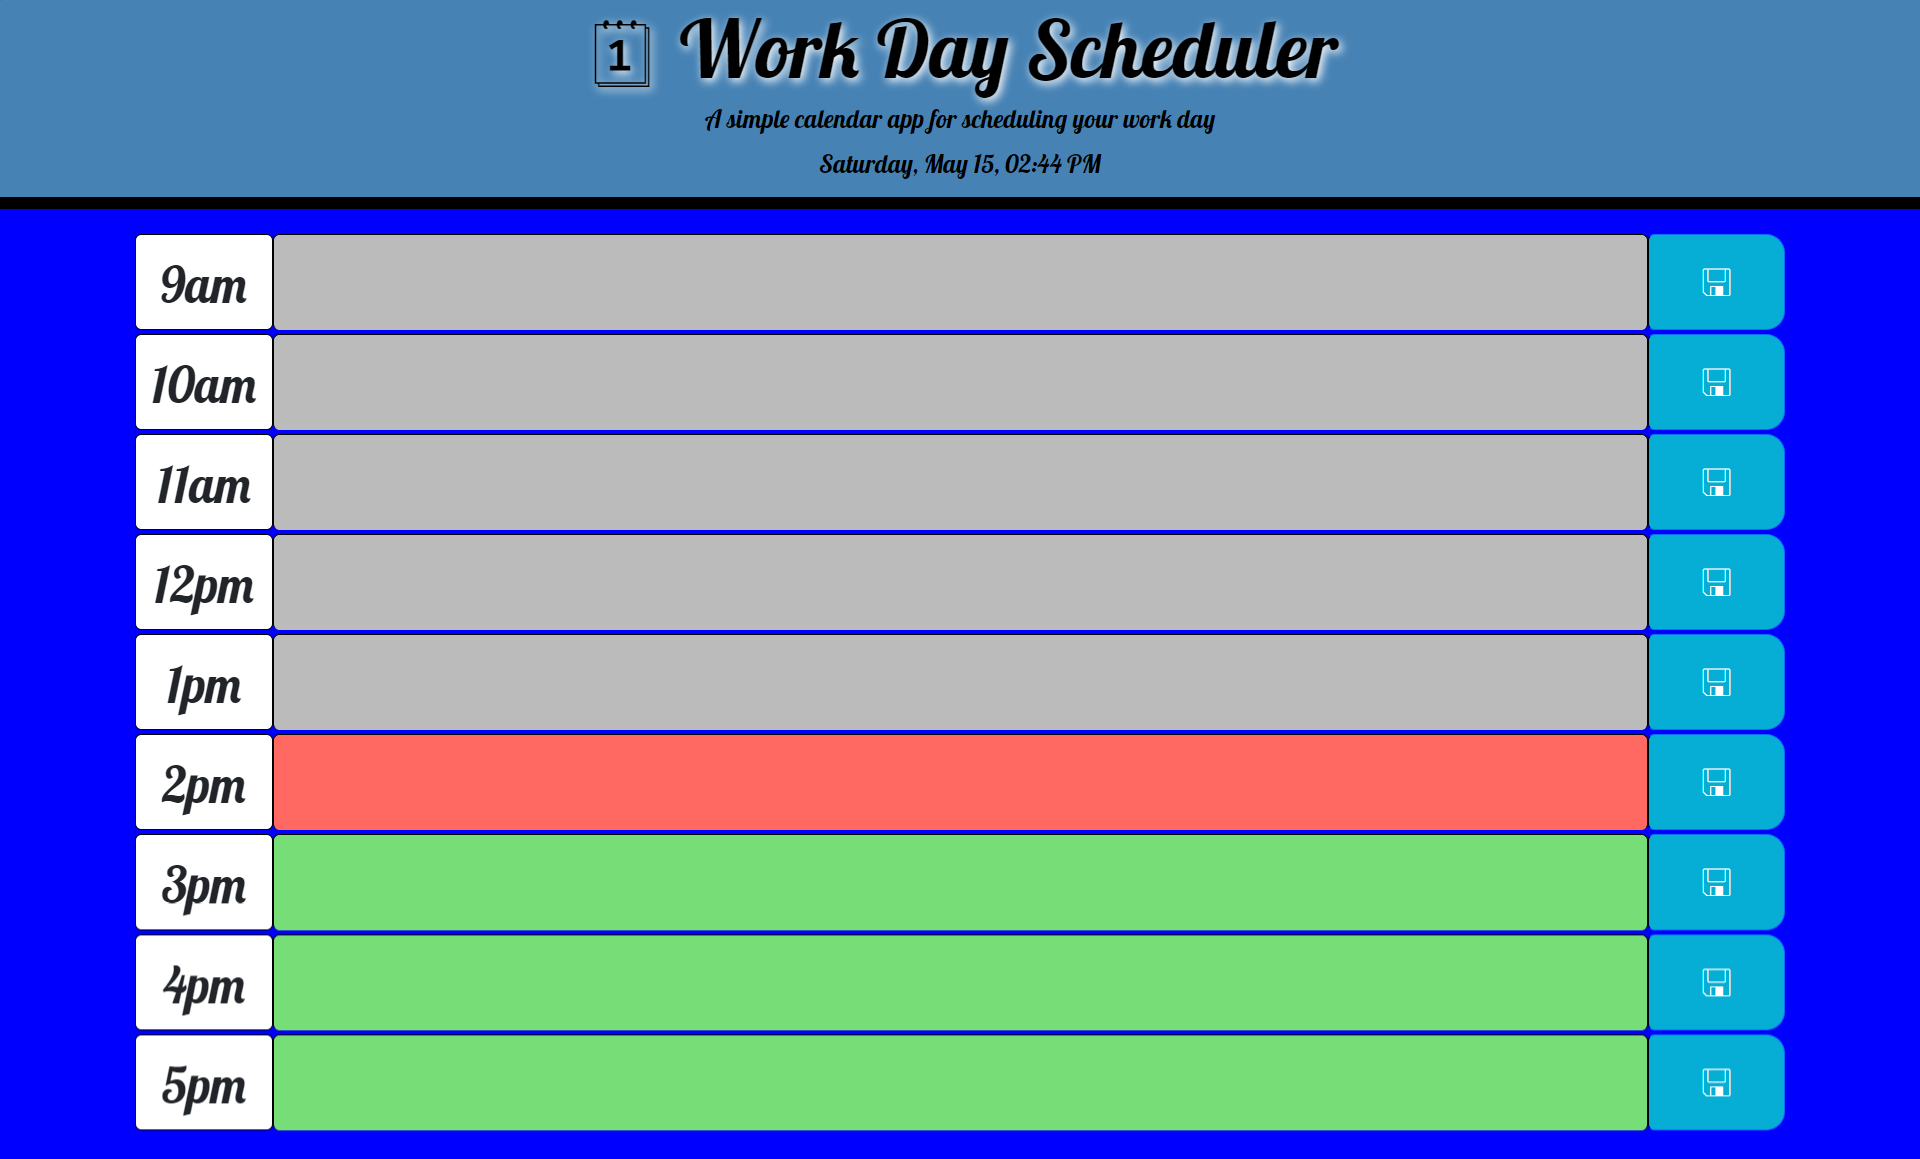 Work Day Scheduler